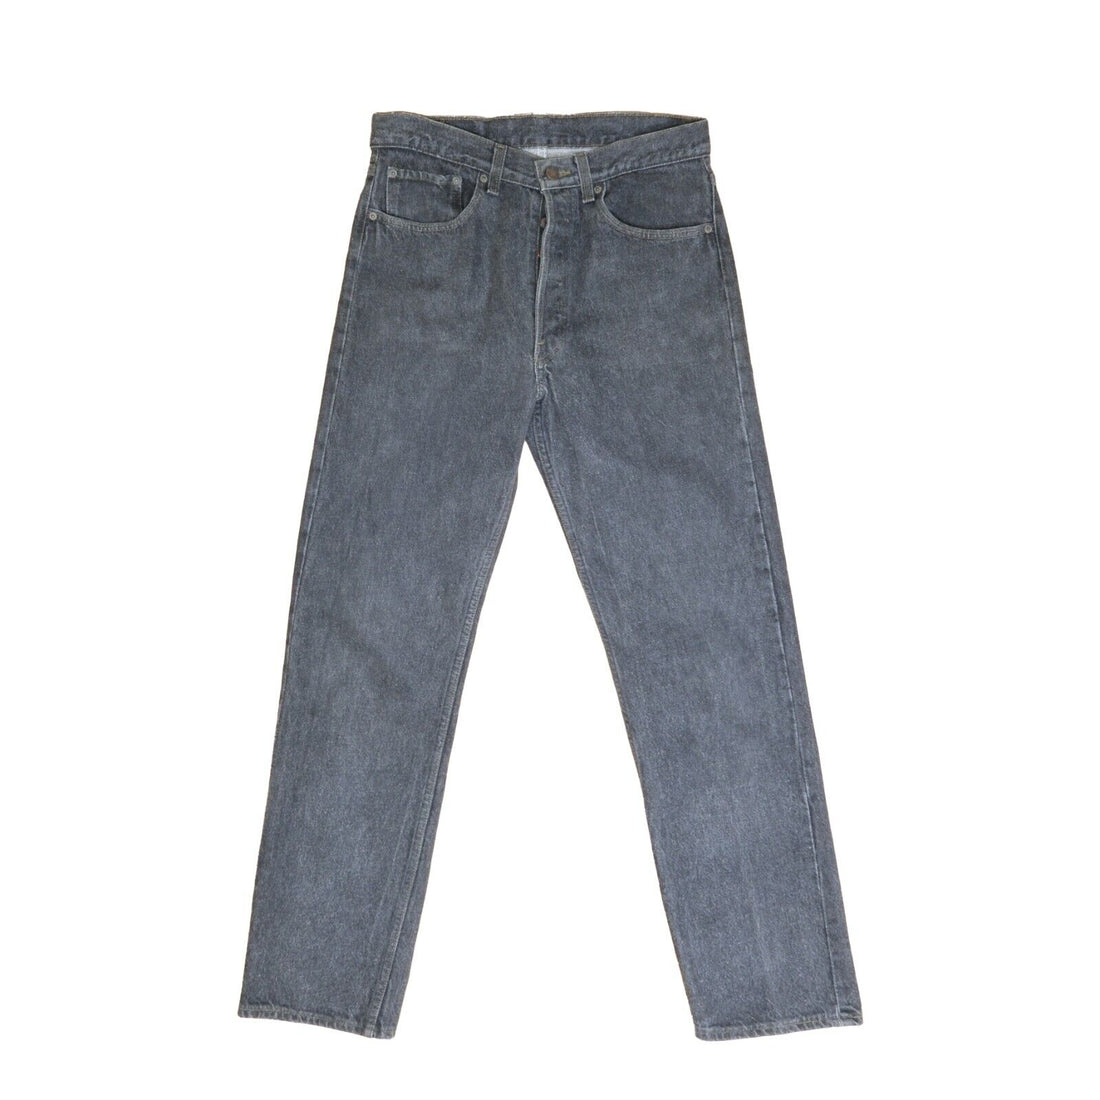 Vintage Levi Strauss & Co 501 XX Denim Jeans Size 32W X 32L Button Fly 501-0658